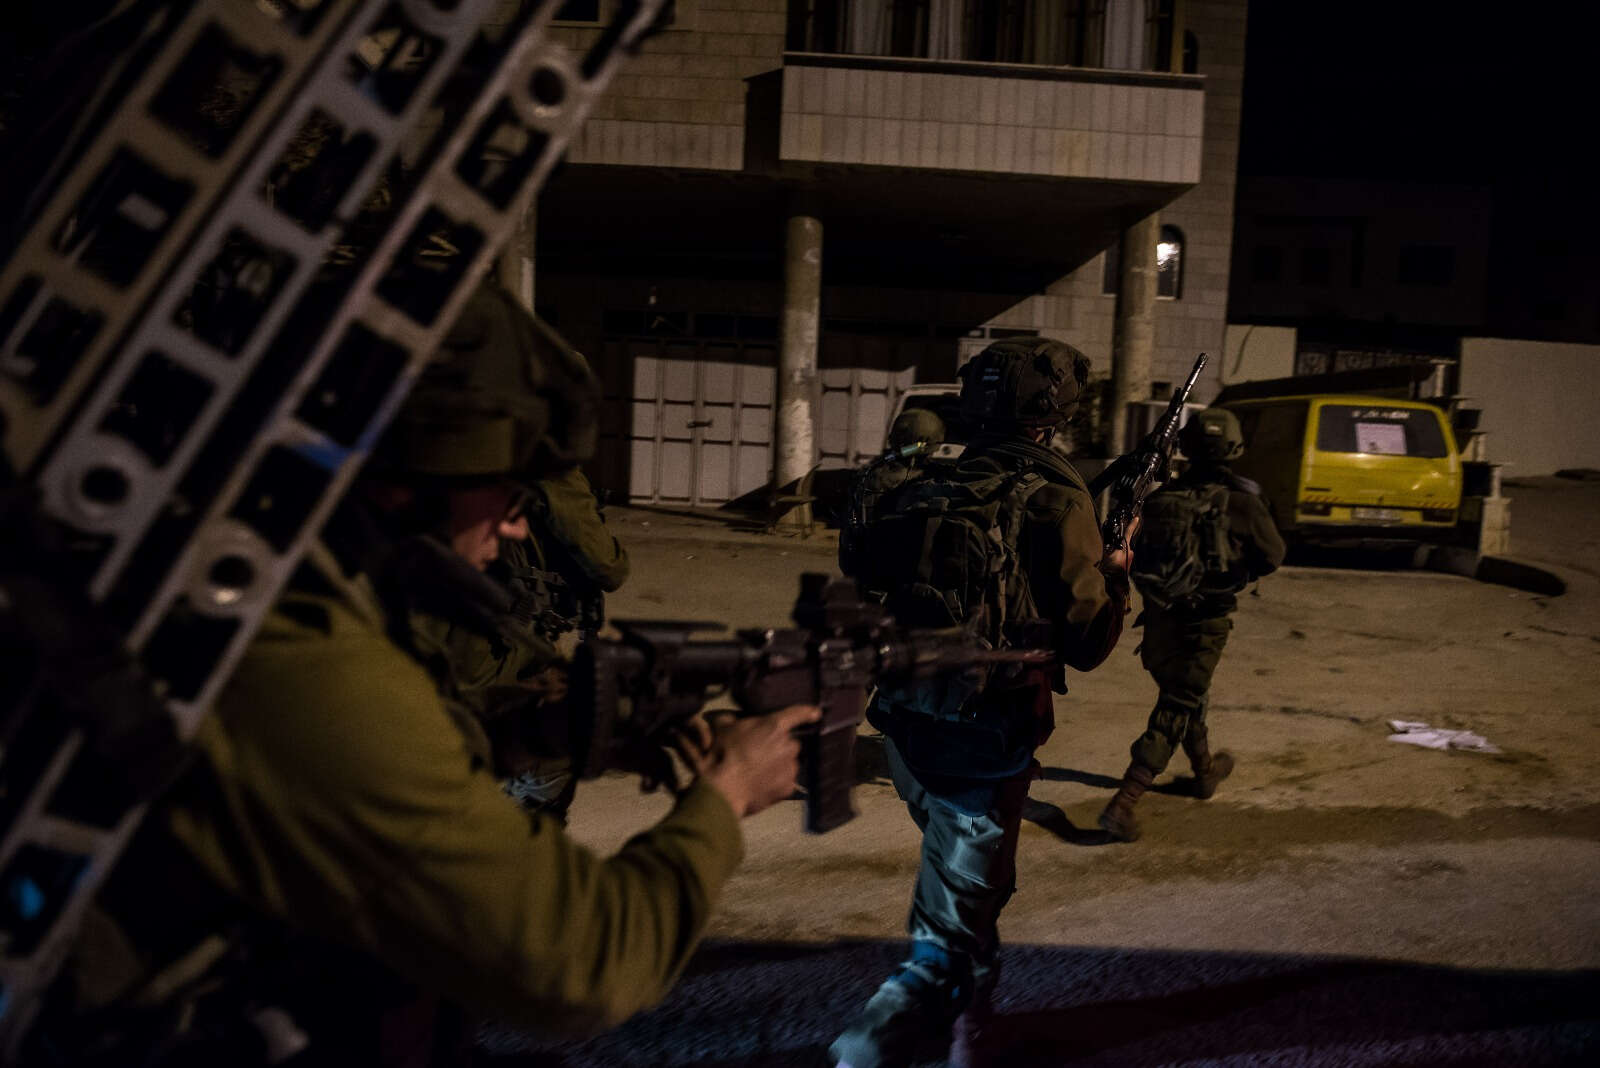 Четвертый террорист. Израильский спецназ в Шхеме. Террористической группировки "Логово Льва". Штаб квартира ШАБАК.